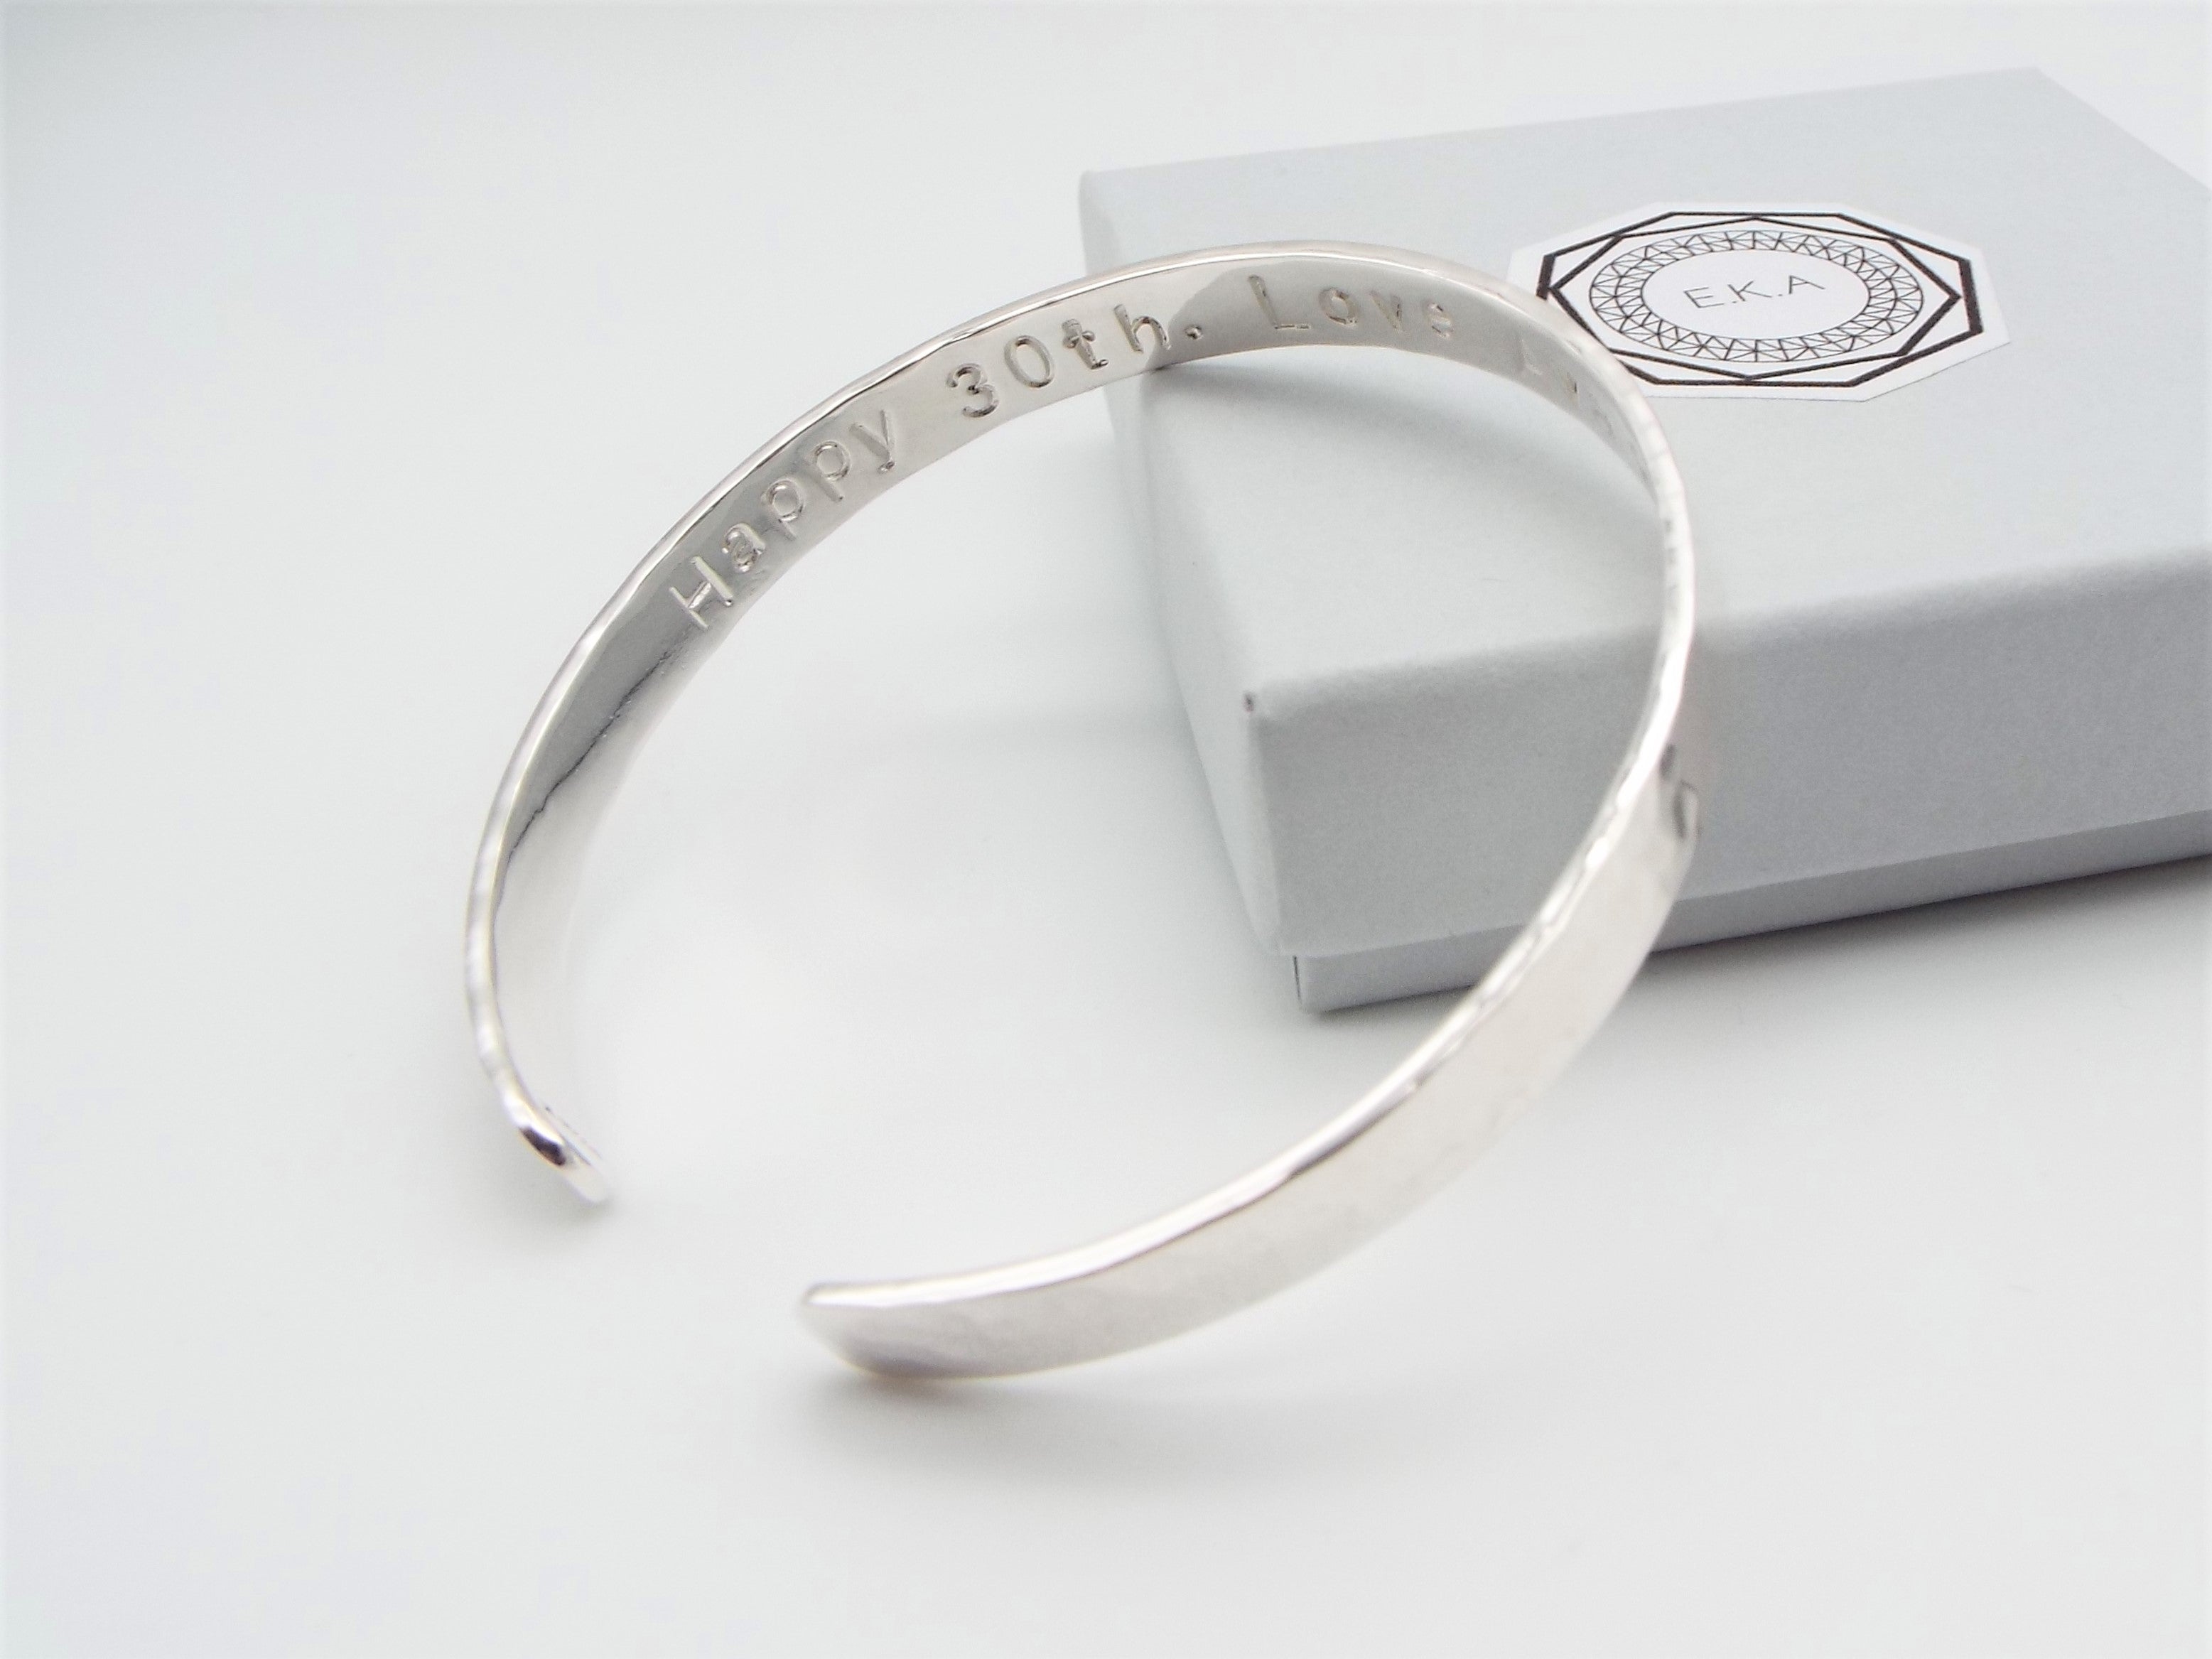 Minimalist Unisex Personalized Jewelry Cuff Bracelet